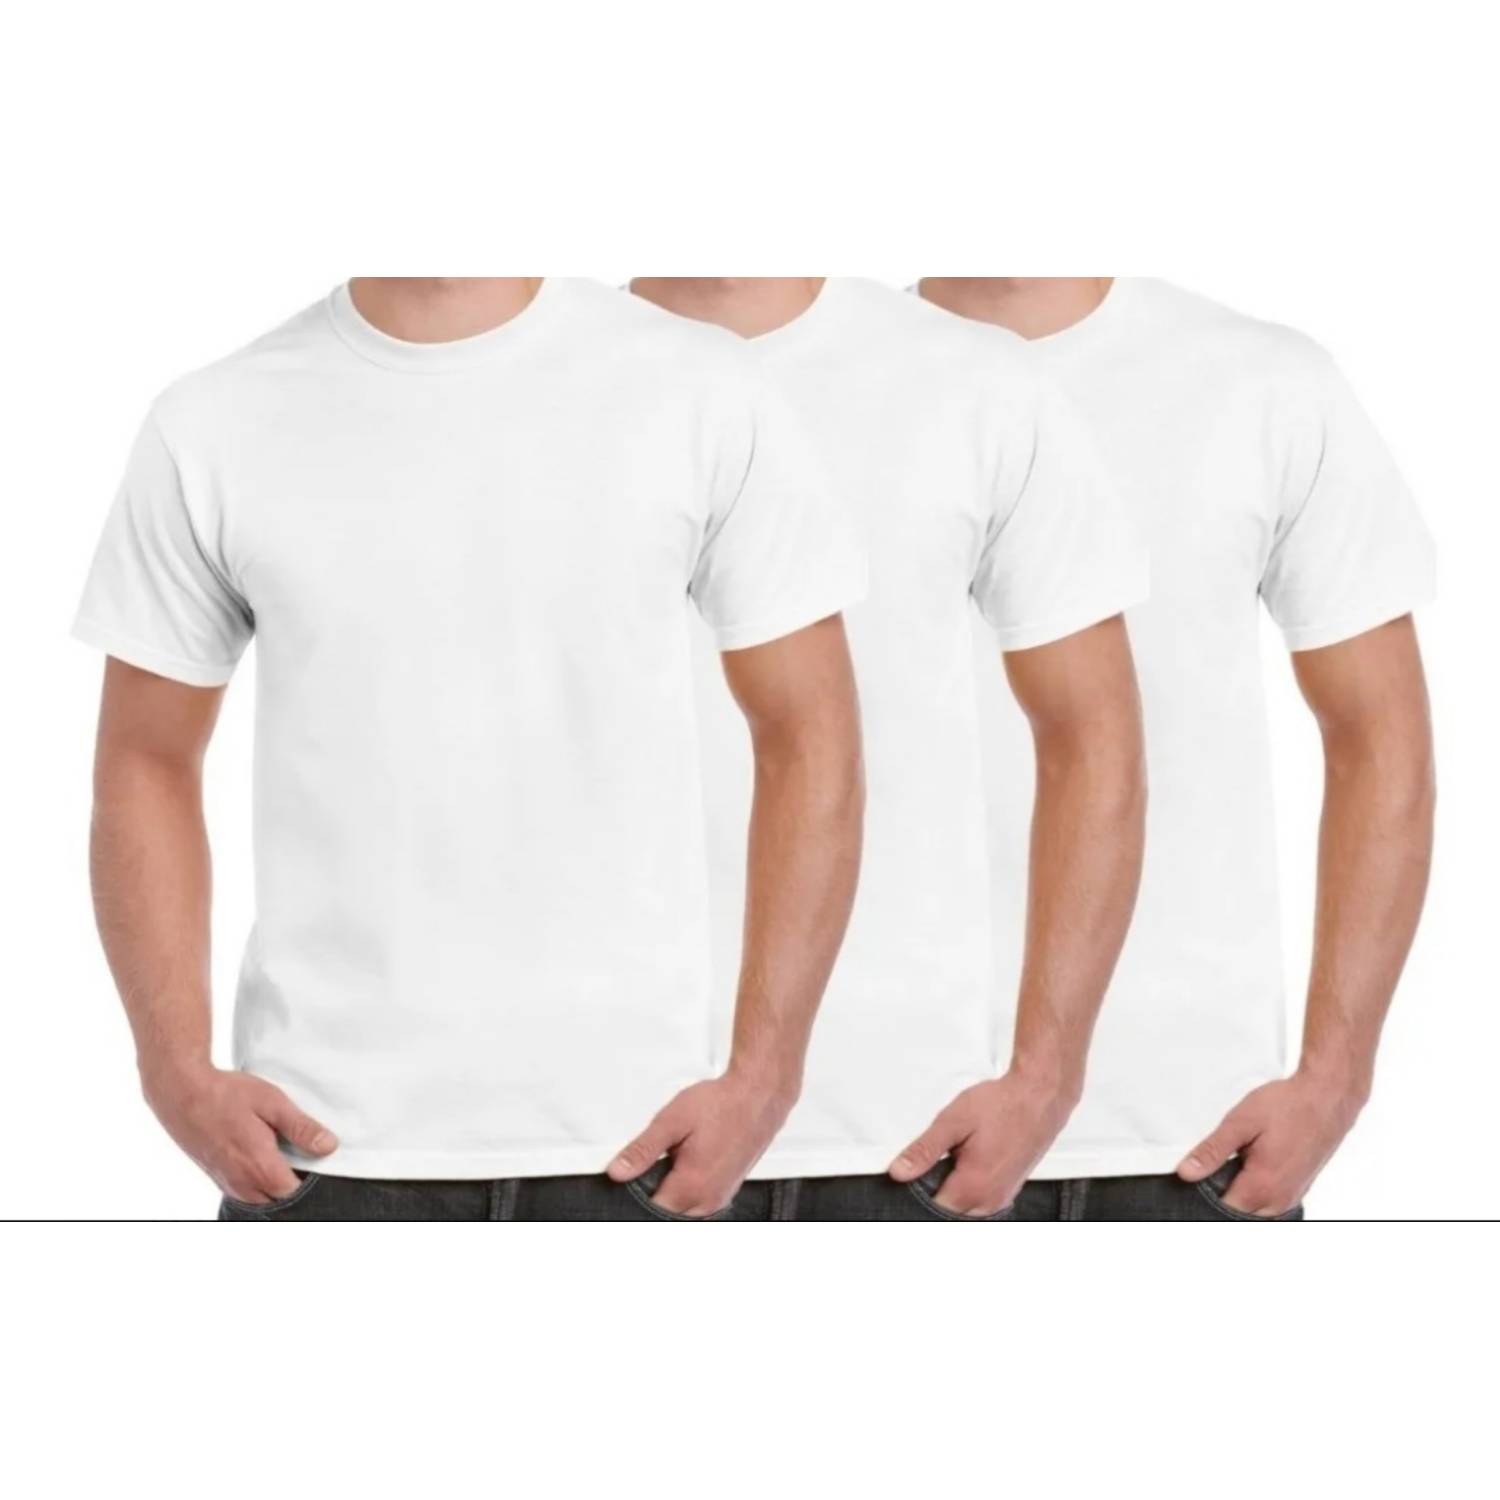 Pack 6 Camisetas Niño Manga Corta Algodón Blancas Unisex GENERICO